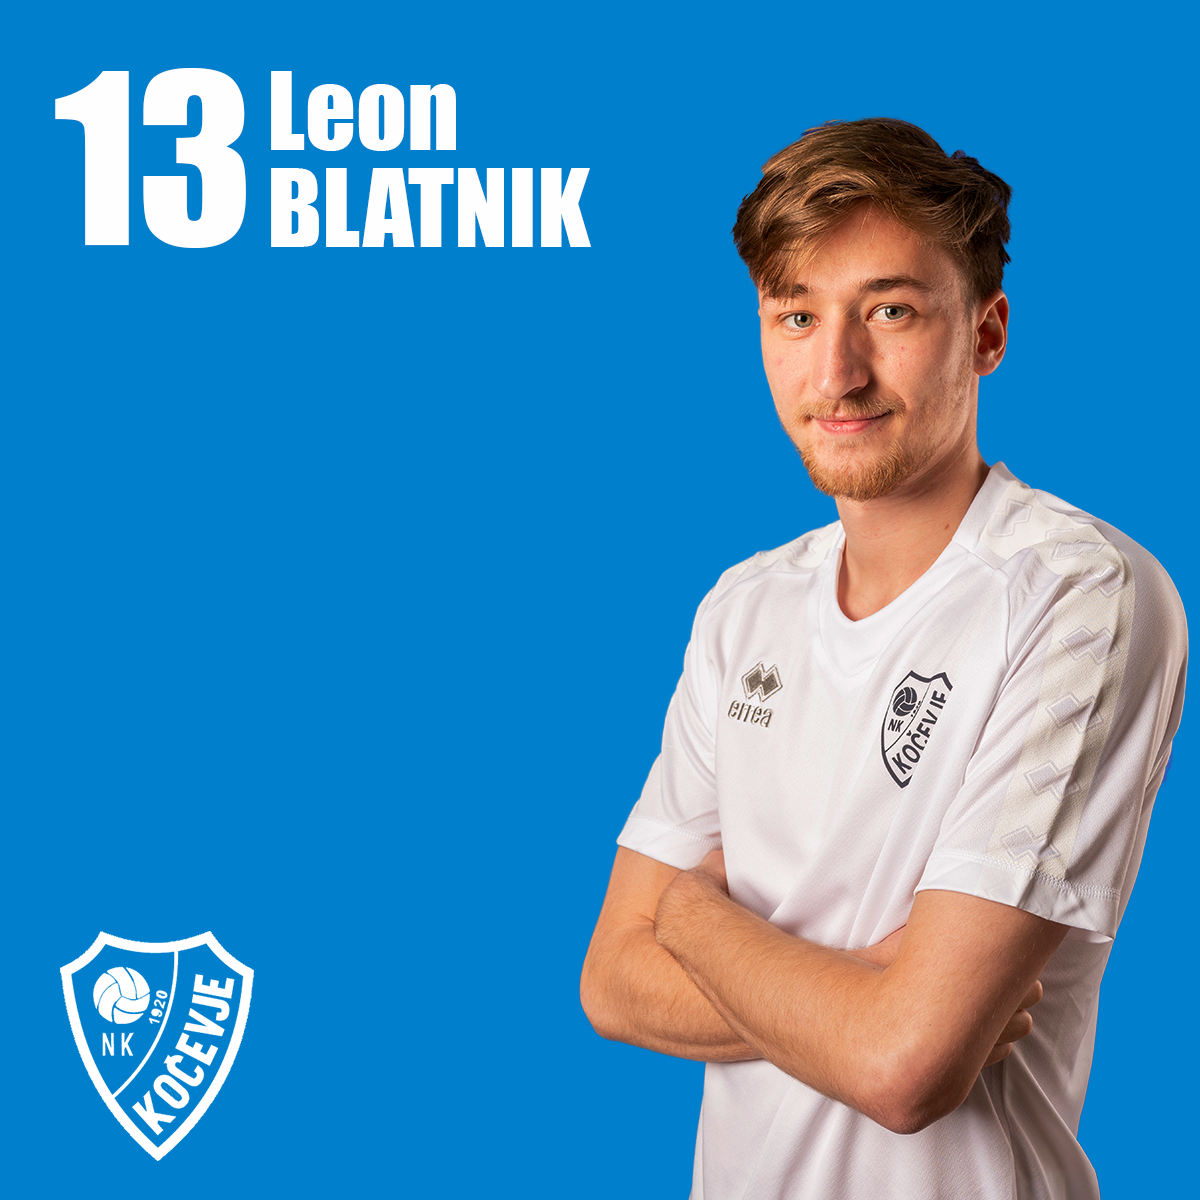 Leon Blatnik